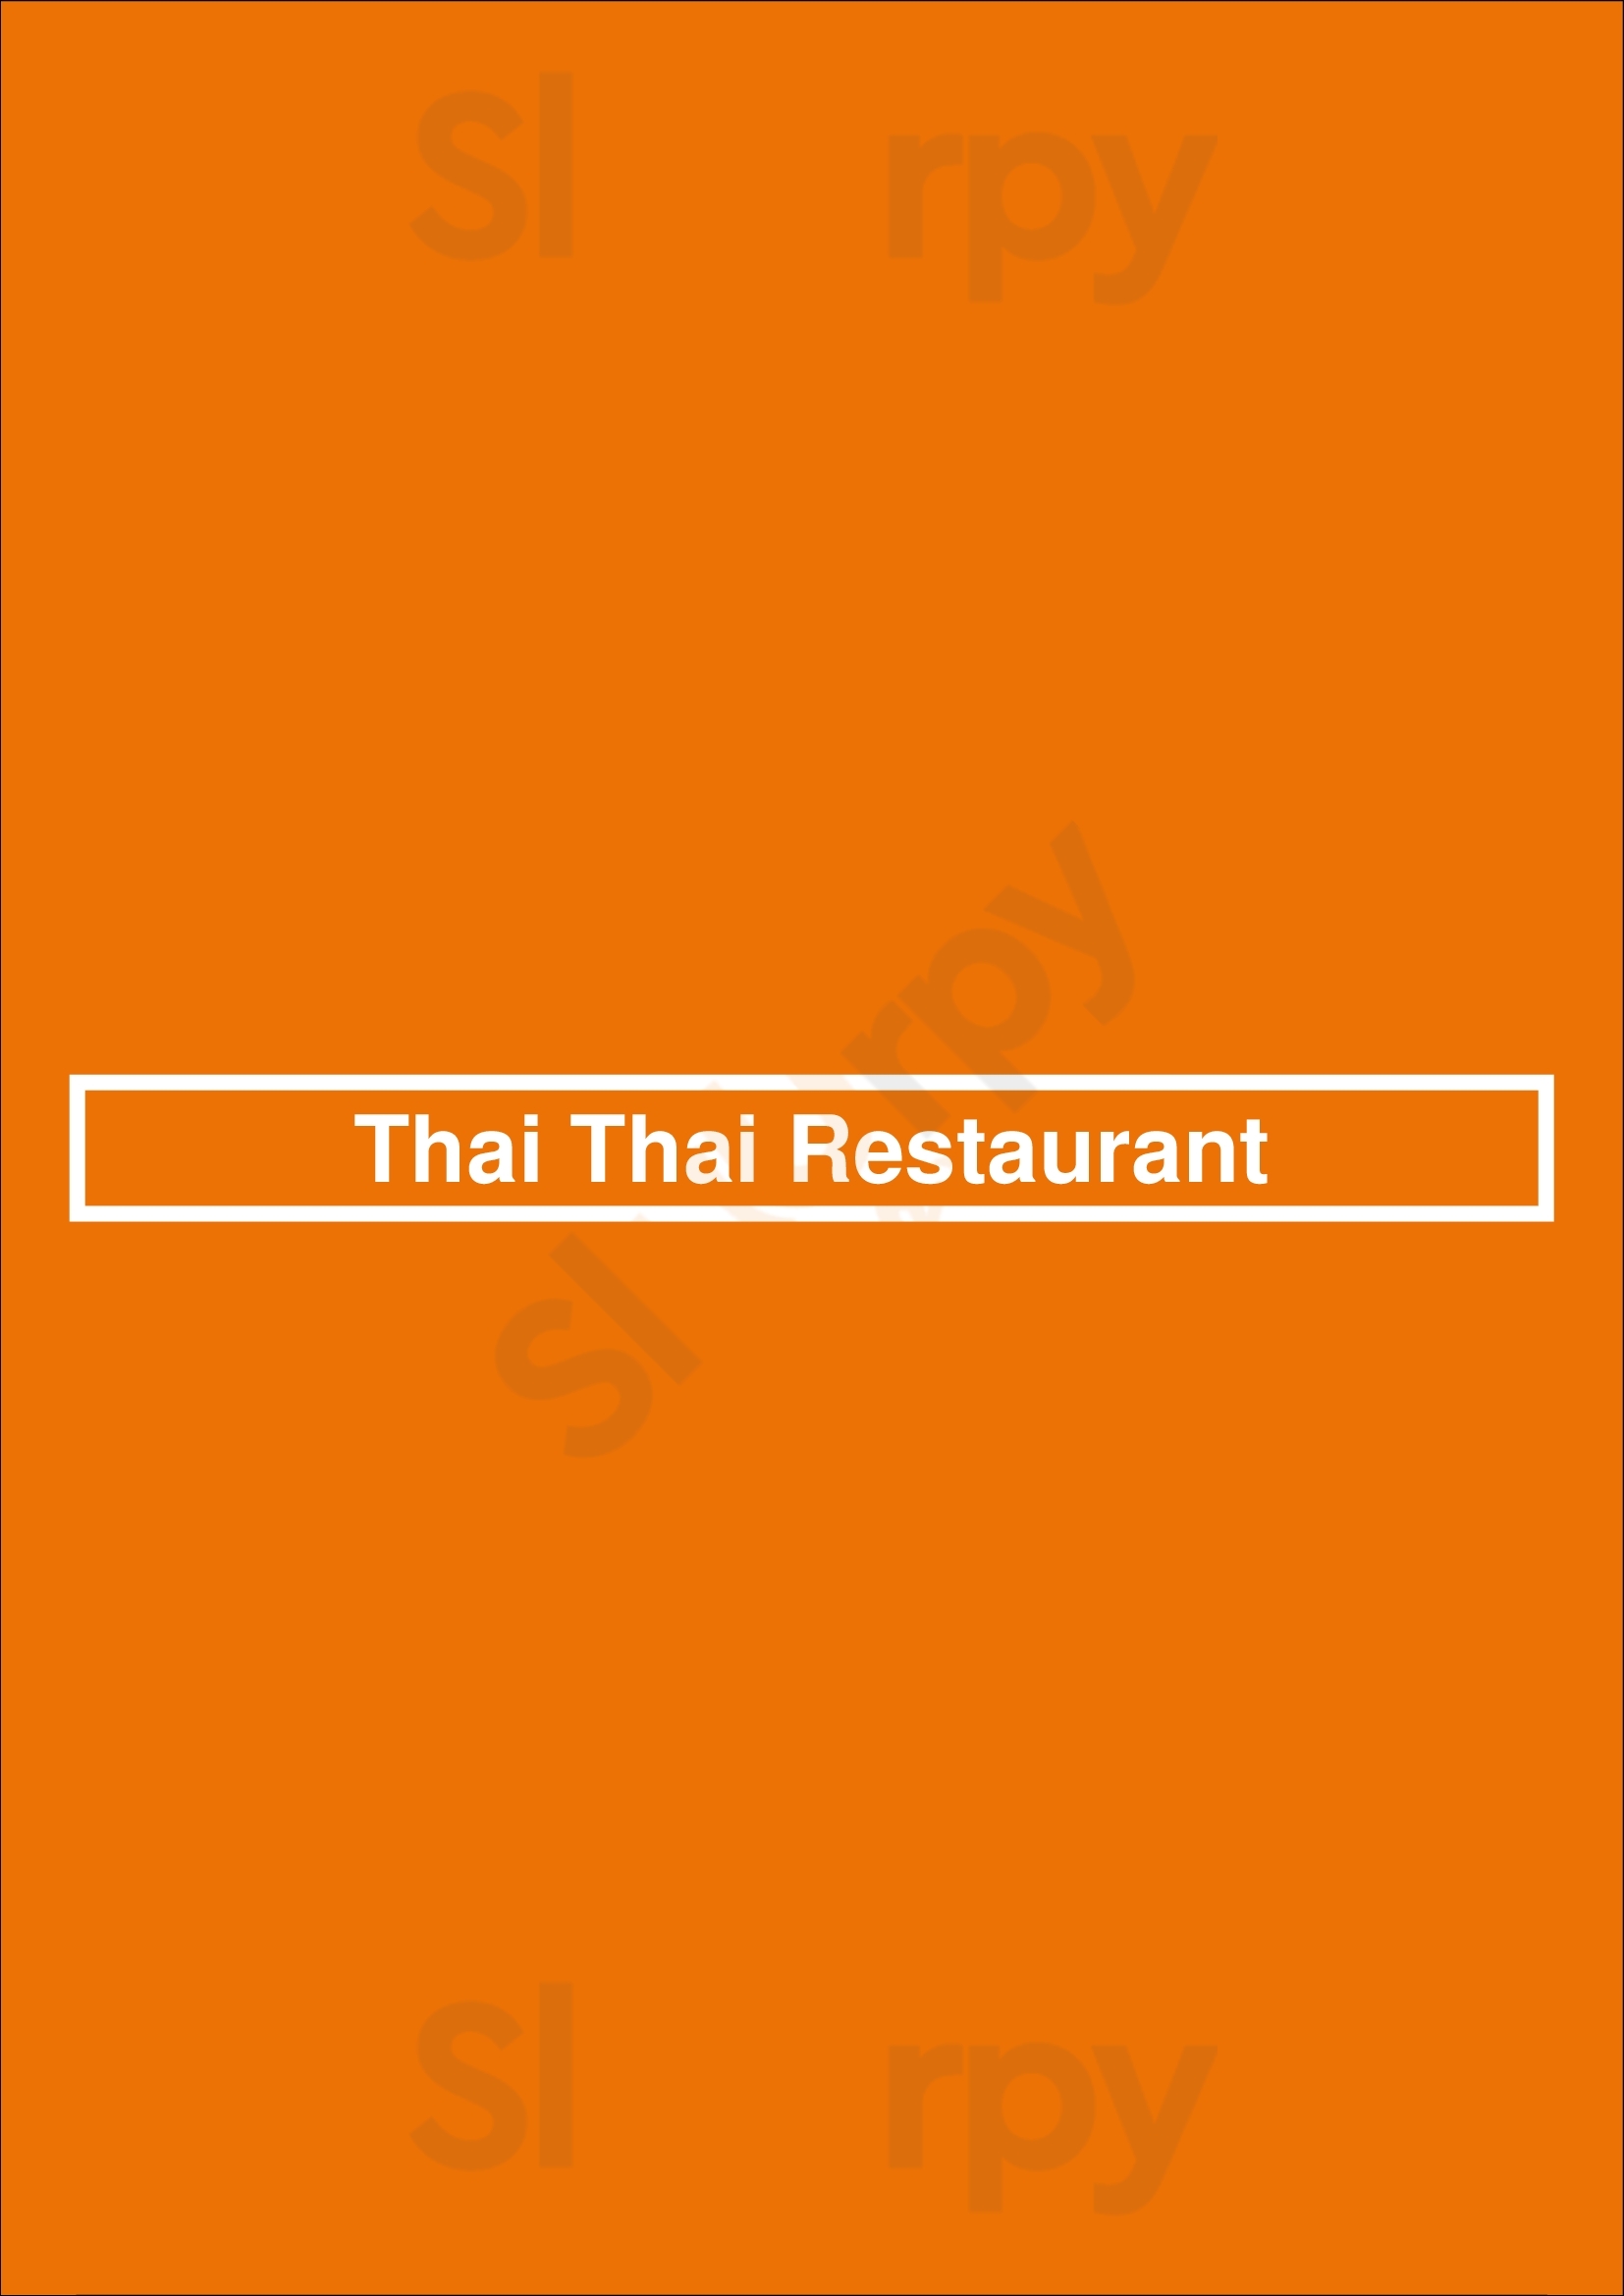 Thai Thai Restaurant Arlington Menu - 1